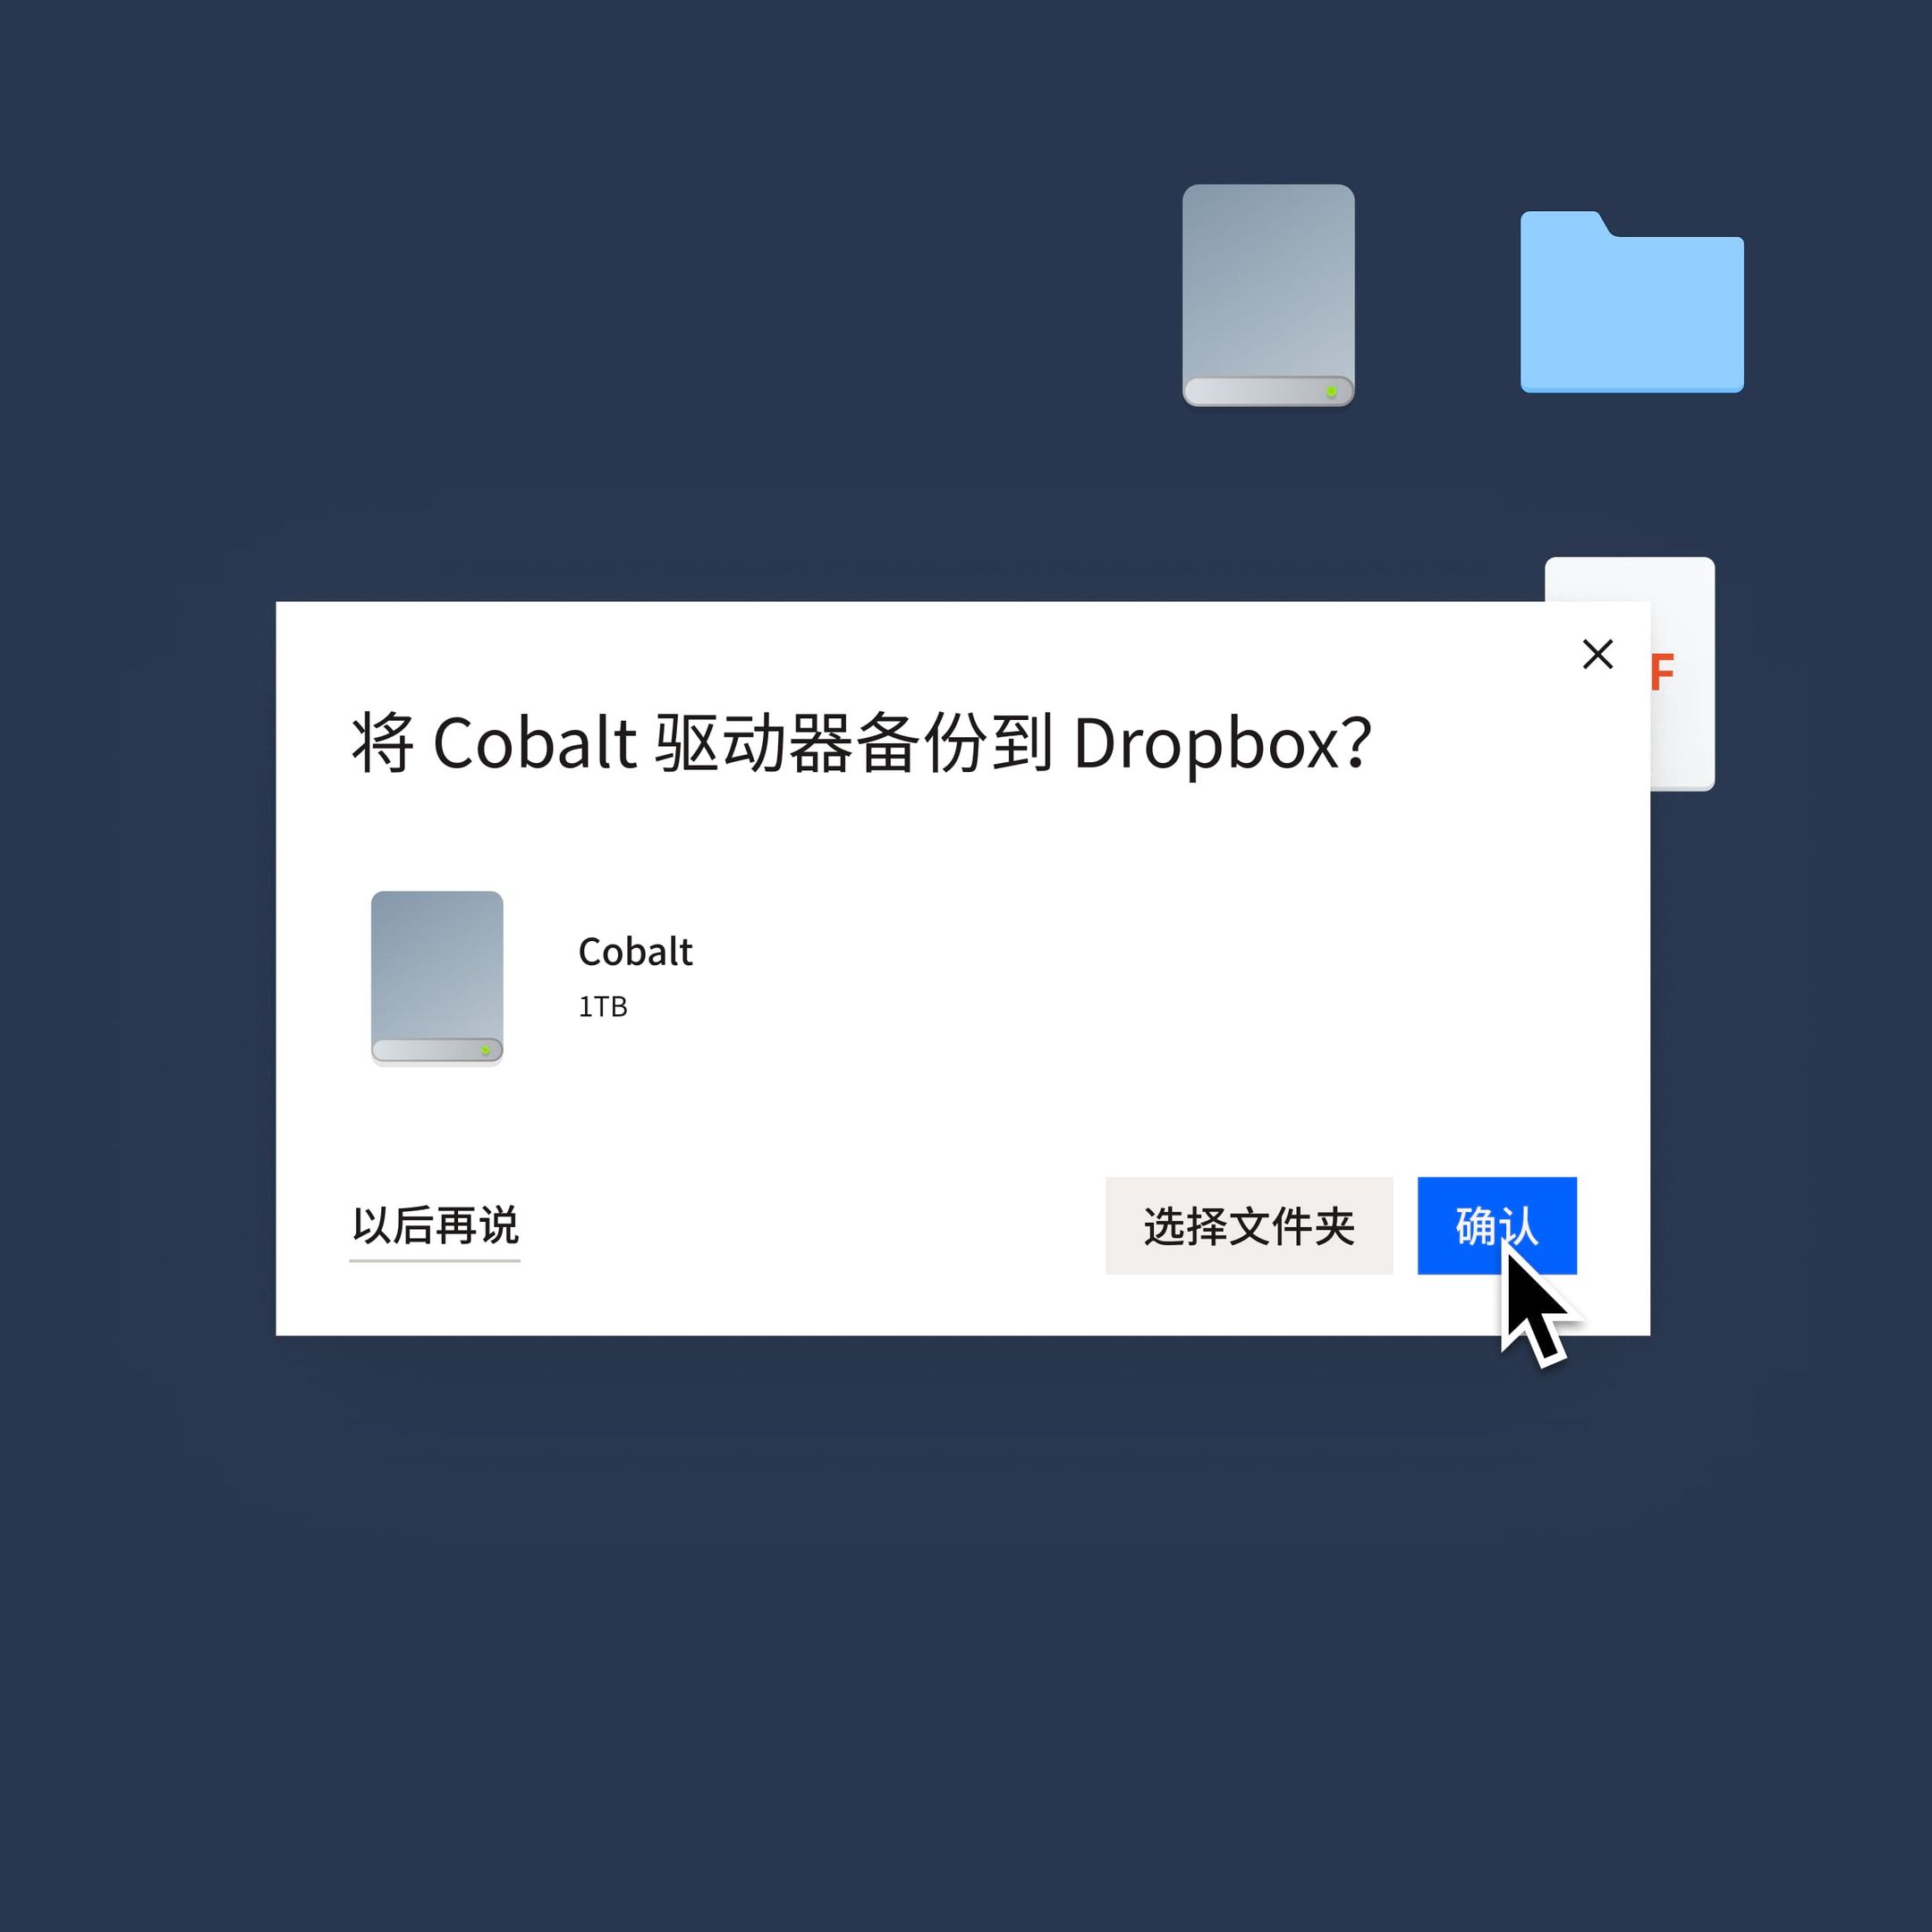 用户单击蓝色“确认”按钮，即可将其 Cobalt 驱动器备份到 Dropbox